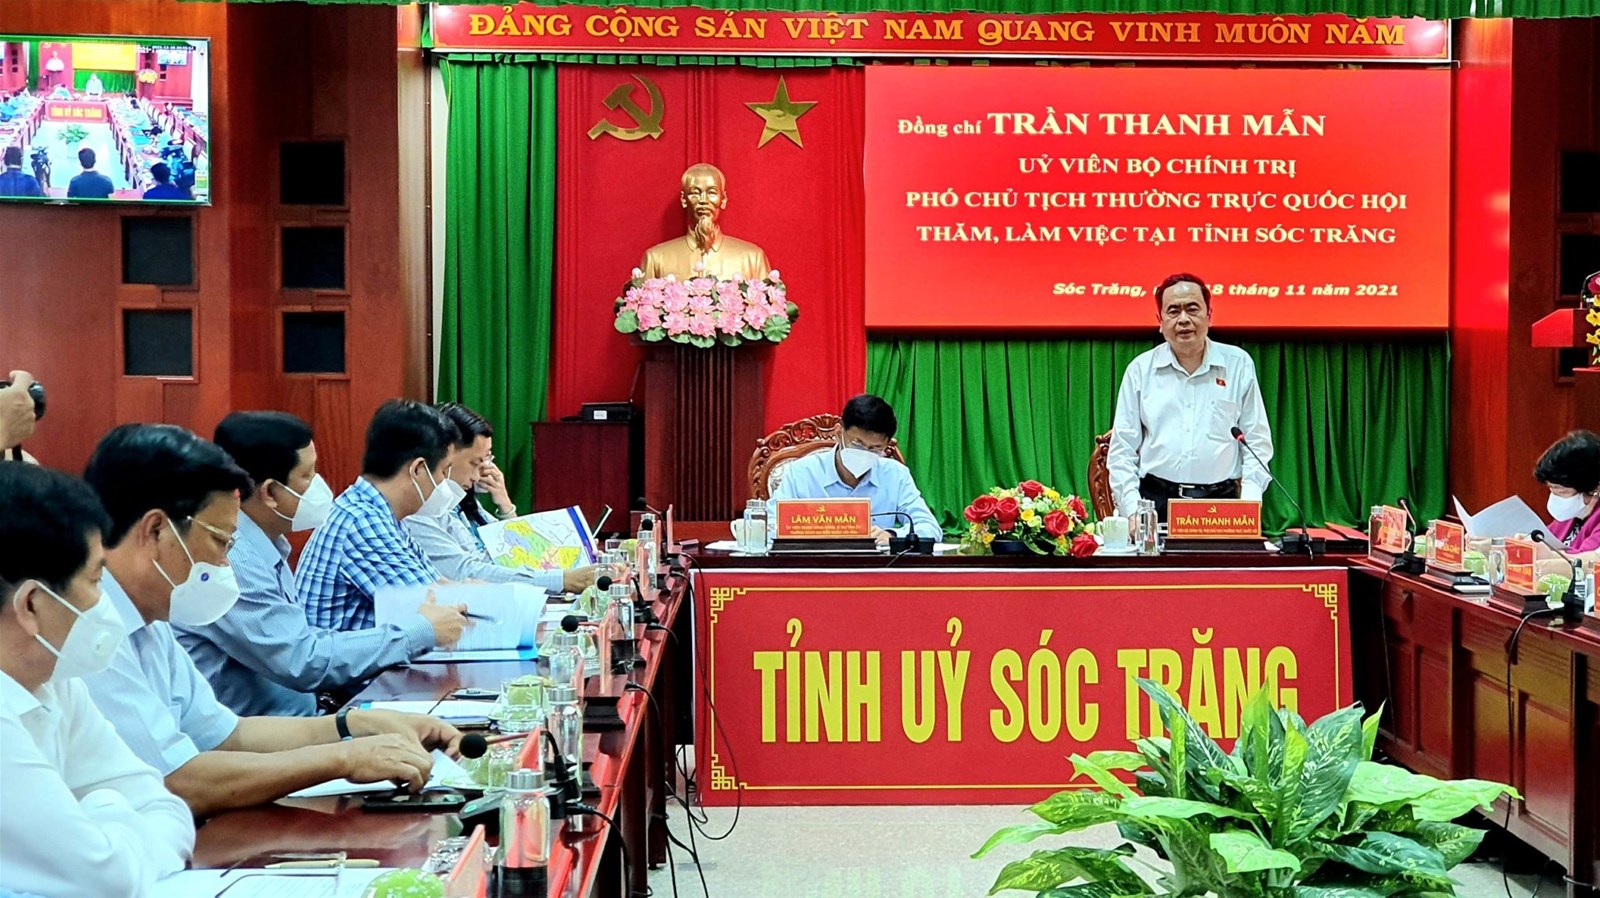 Phó Chủ tịch Thường trực Quốc hội Trần Thanh Mẫn thăm và làm việc tại Sóc Trăng